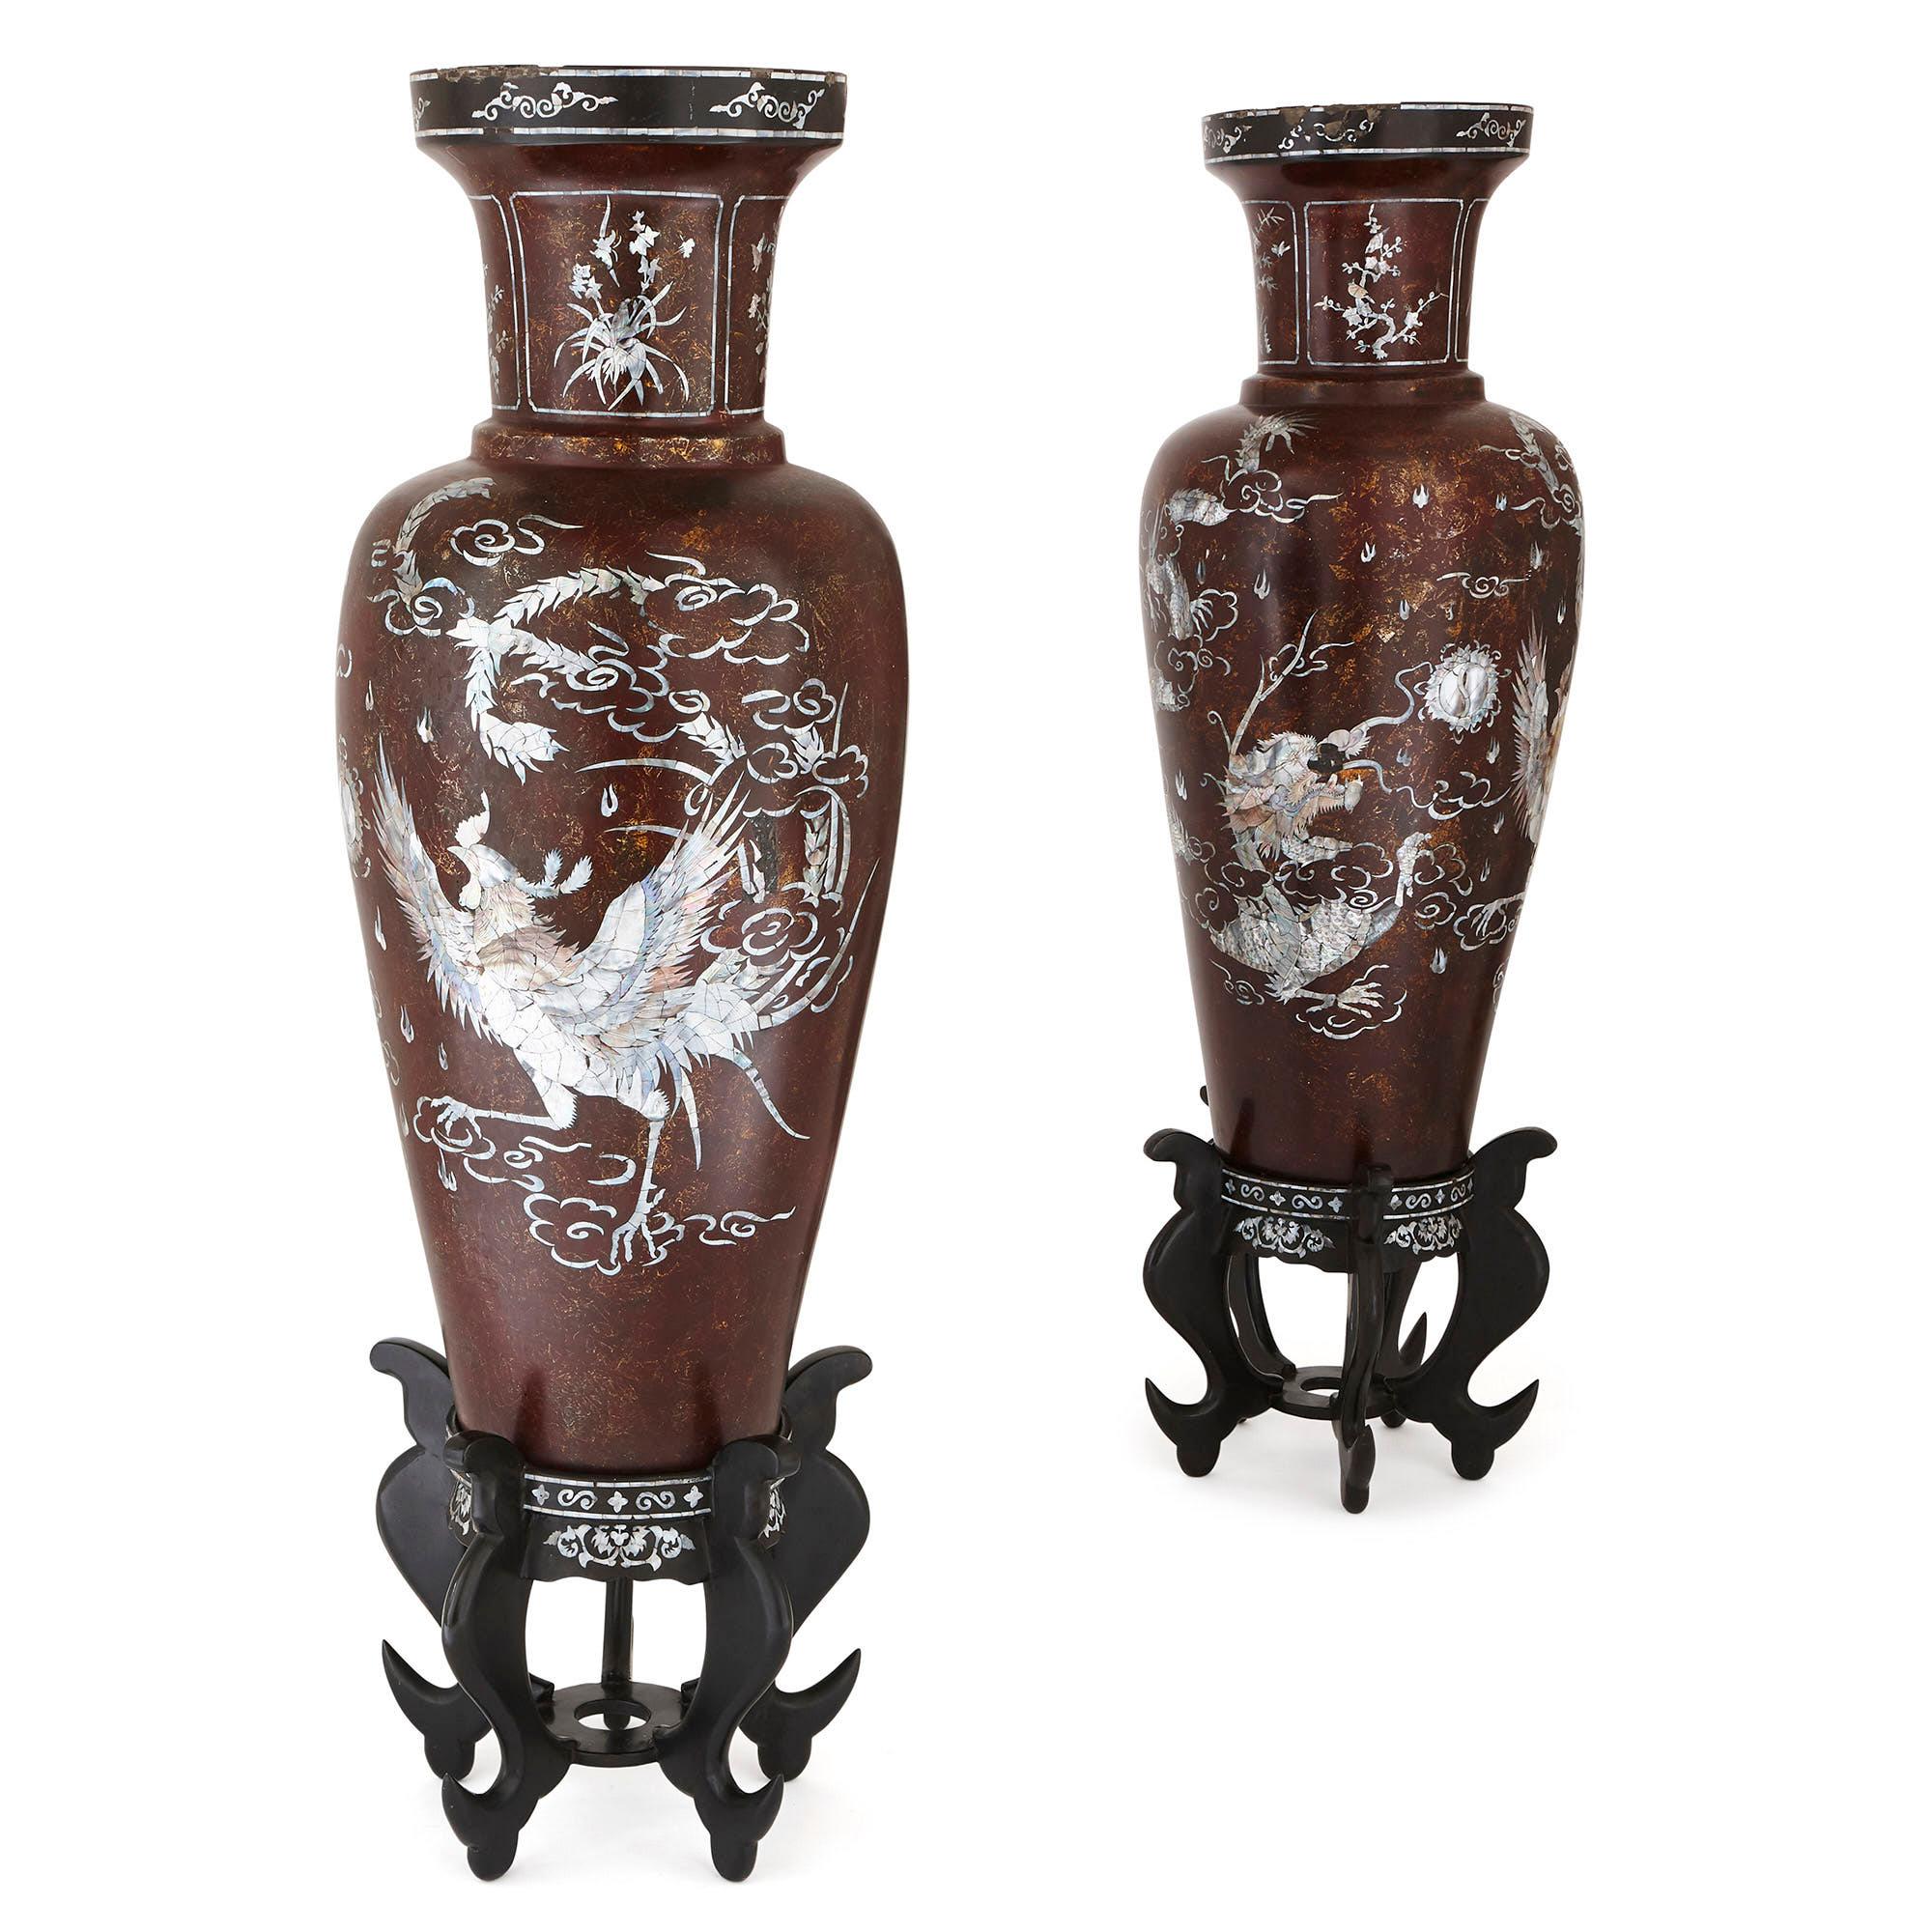 Dieses Paar großer chinesischer Pappmaché-Vasen hat einen braunen Grund und umfangreiche Perlmutt-Intarsien. Die Intarsien sind so angeordnet, dass auf jeder Vase die Darstellung eines fliegenden Vogels inmitten von Wind und Laub zu sehen ist. Jede